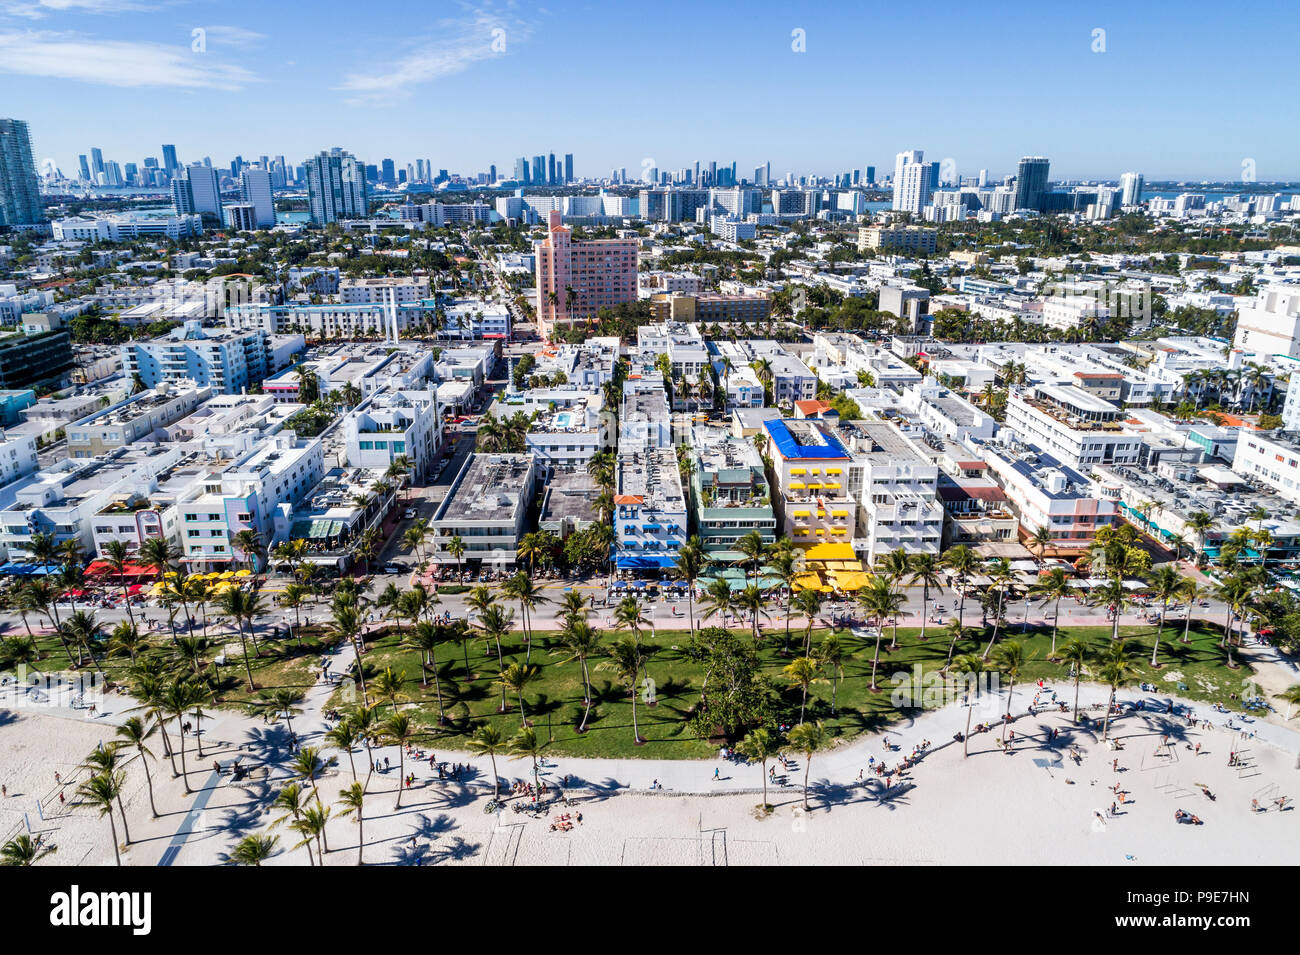 Miami Beach Florida,Ocean Drive,Lummus Park,hotel,Serpentine Trail,aerial overhead view,FL18010117d Stock Photo